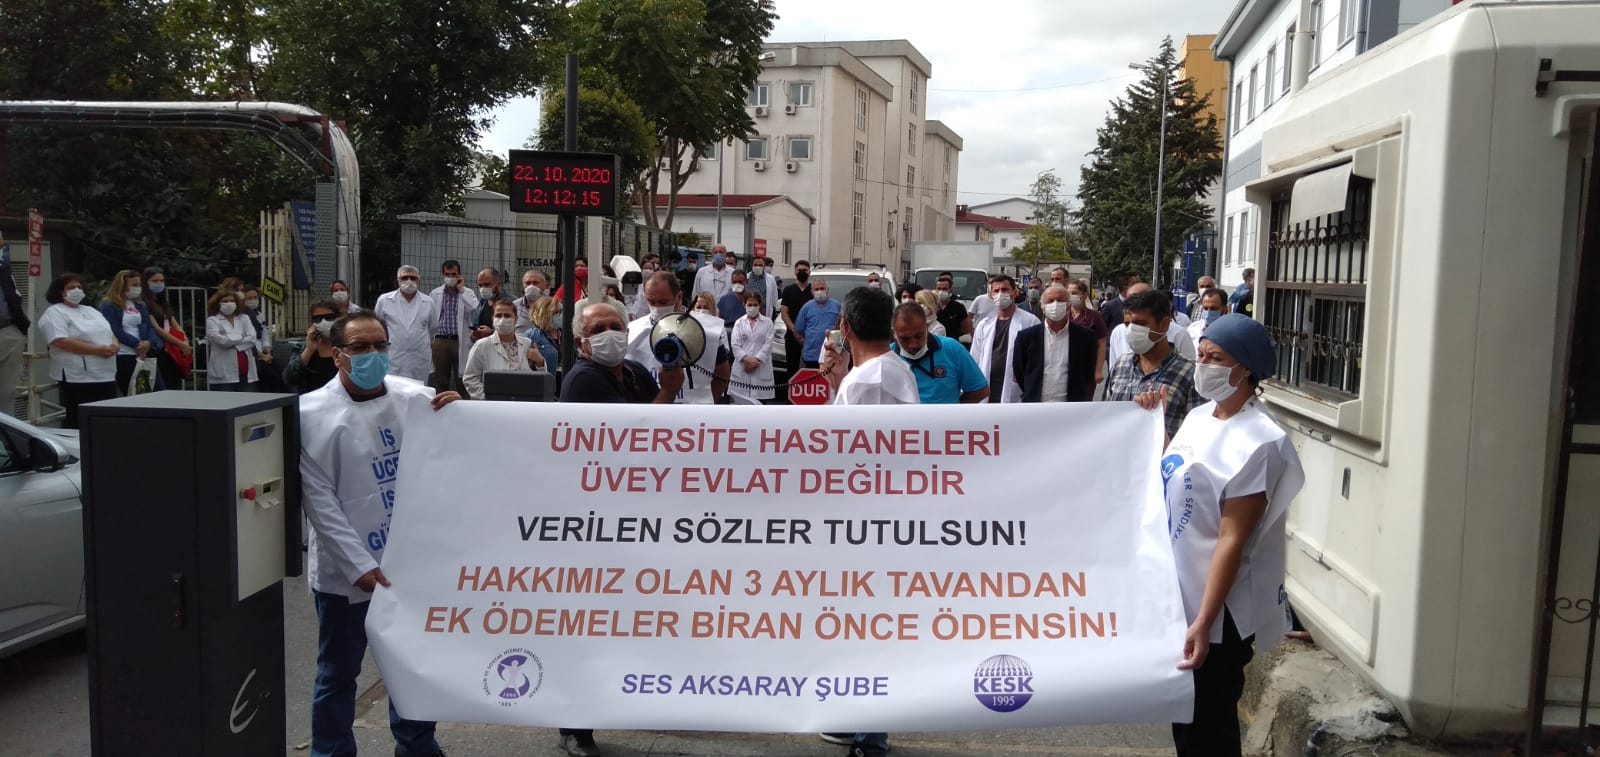 Cerrahpaşa Tıp Fakültesi Hastanesi Önünde Eylem Yapan İstanbul Aksaray Şubemiz: Hakkımız Olan Üç Aylık Tavandan Ek Ödeme Biran Önce Ödensin